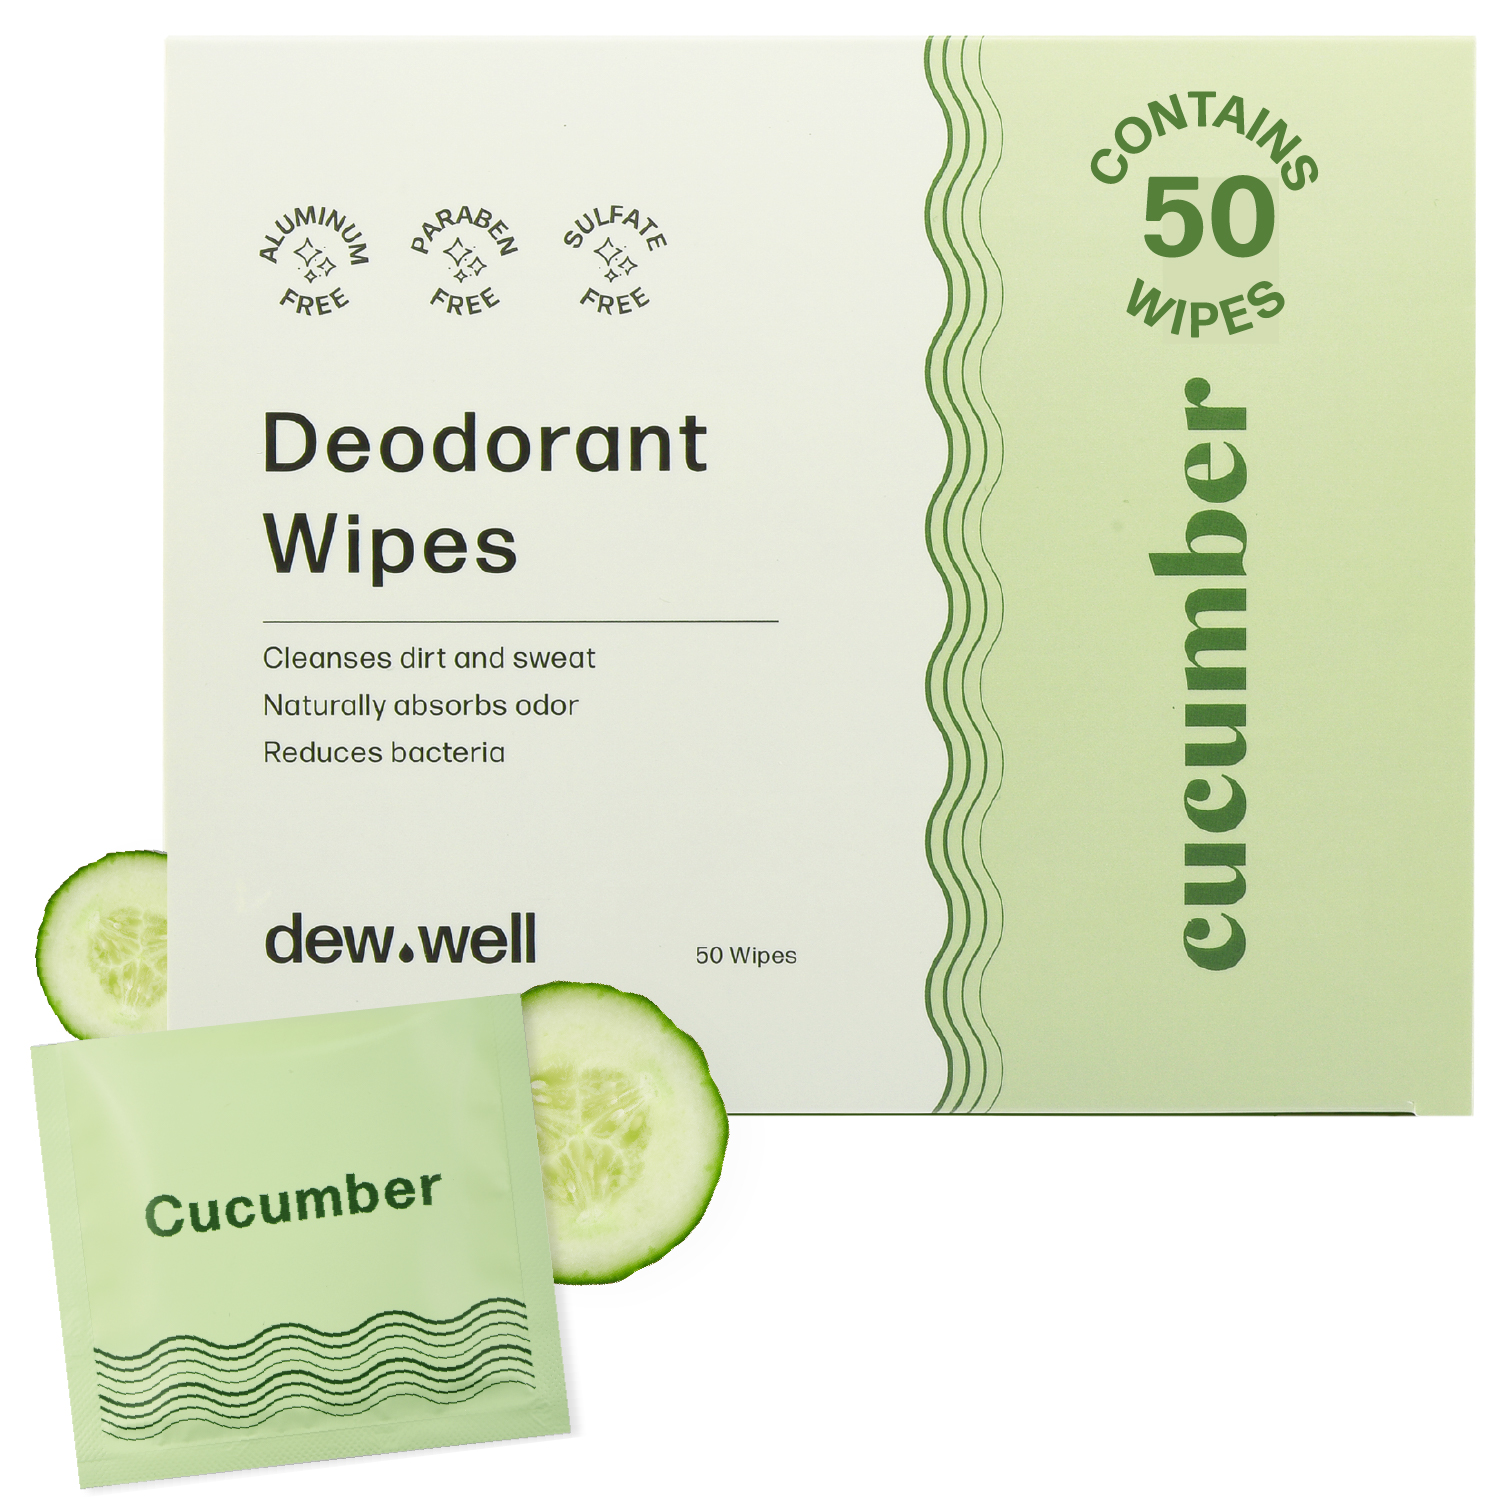 1-DewWell-Deodorant_Wipes-Mint-PDP_v2-100